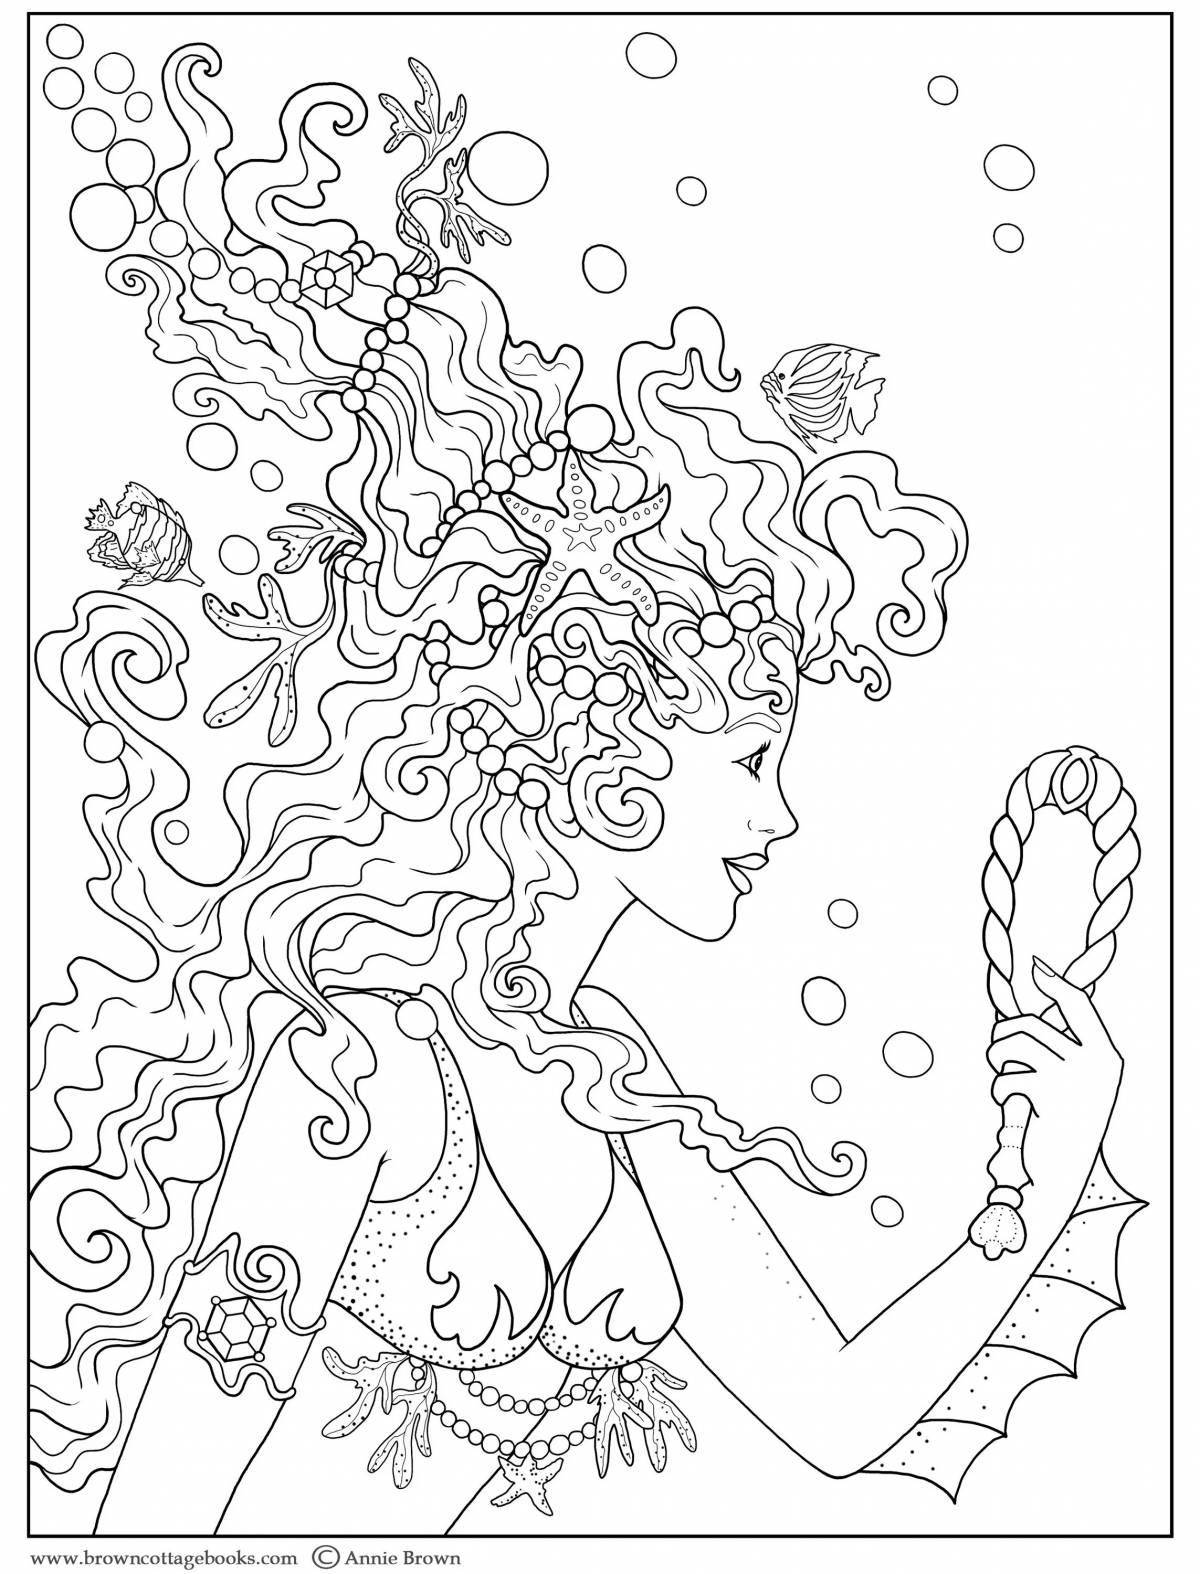 Coloring page adorable sereno head